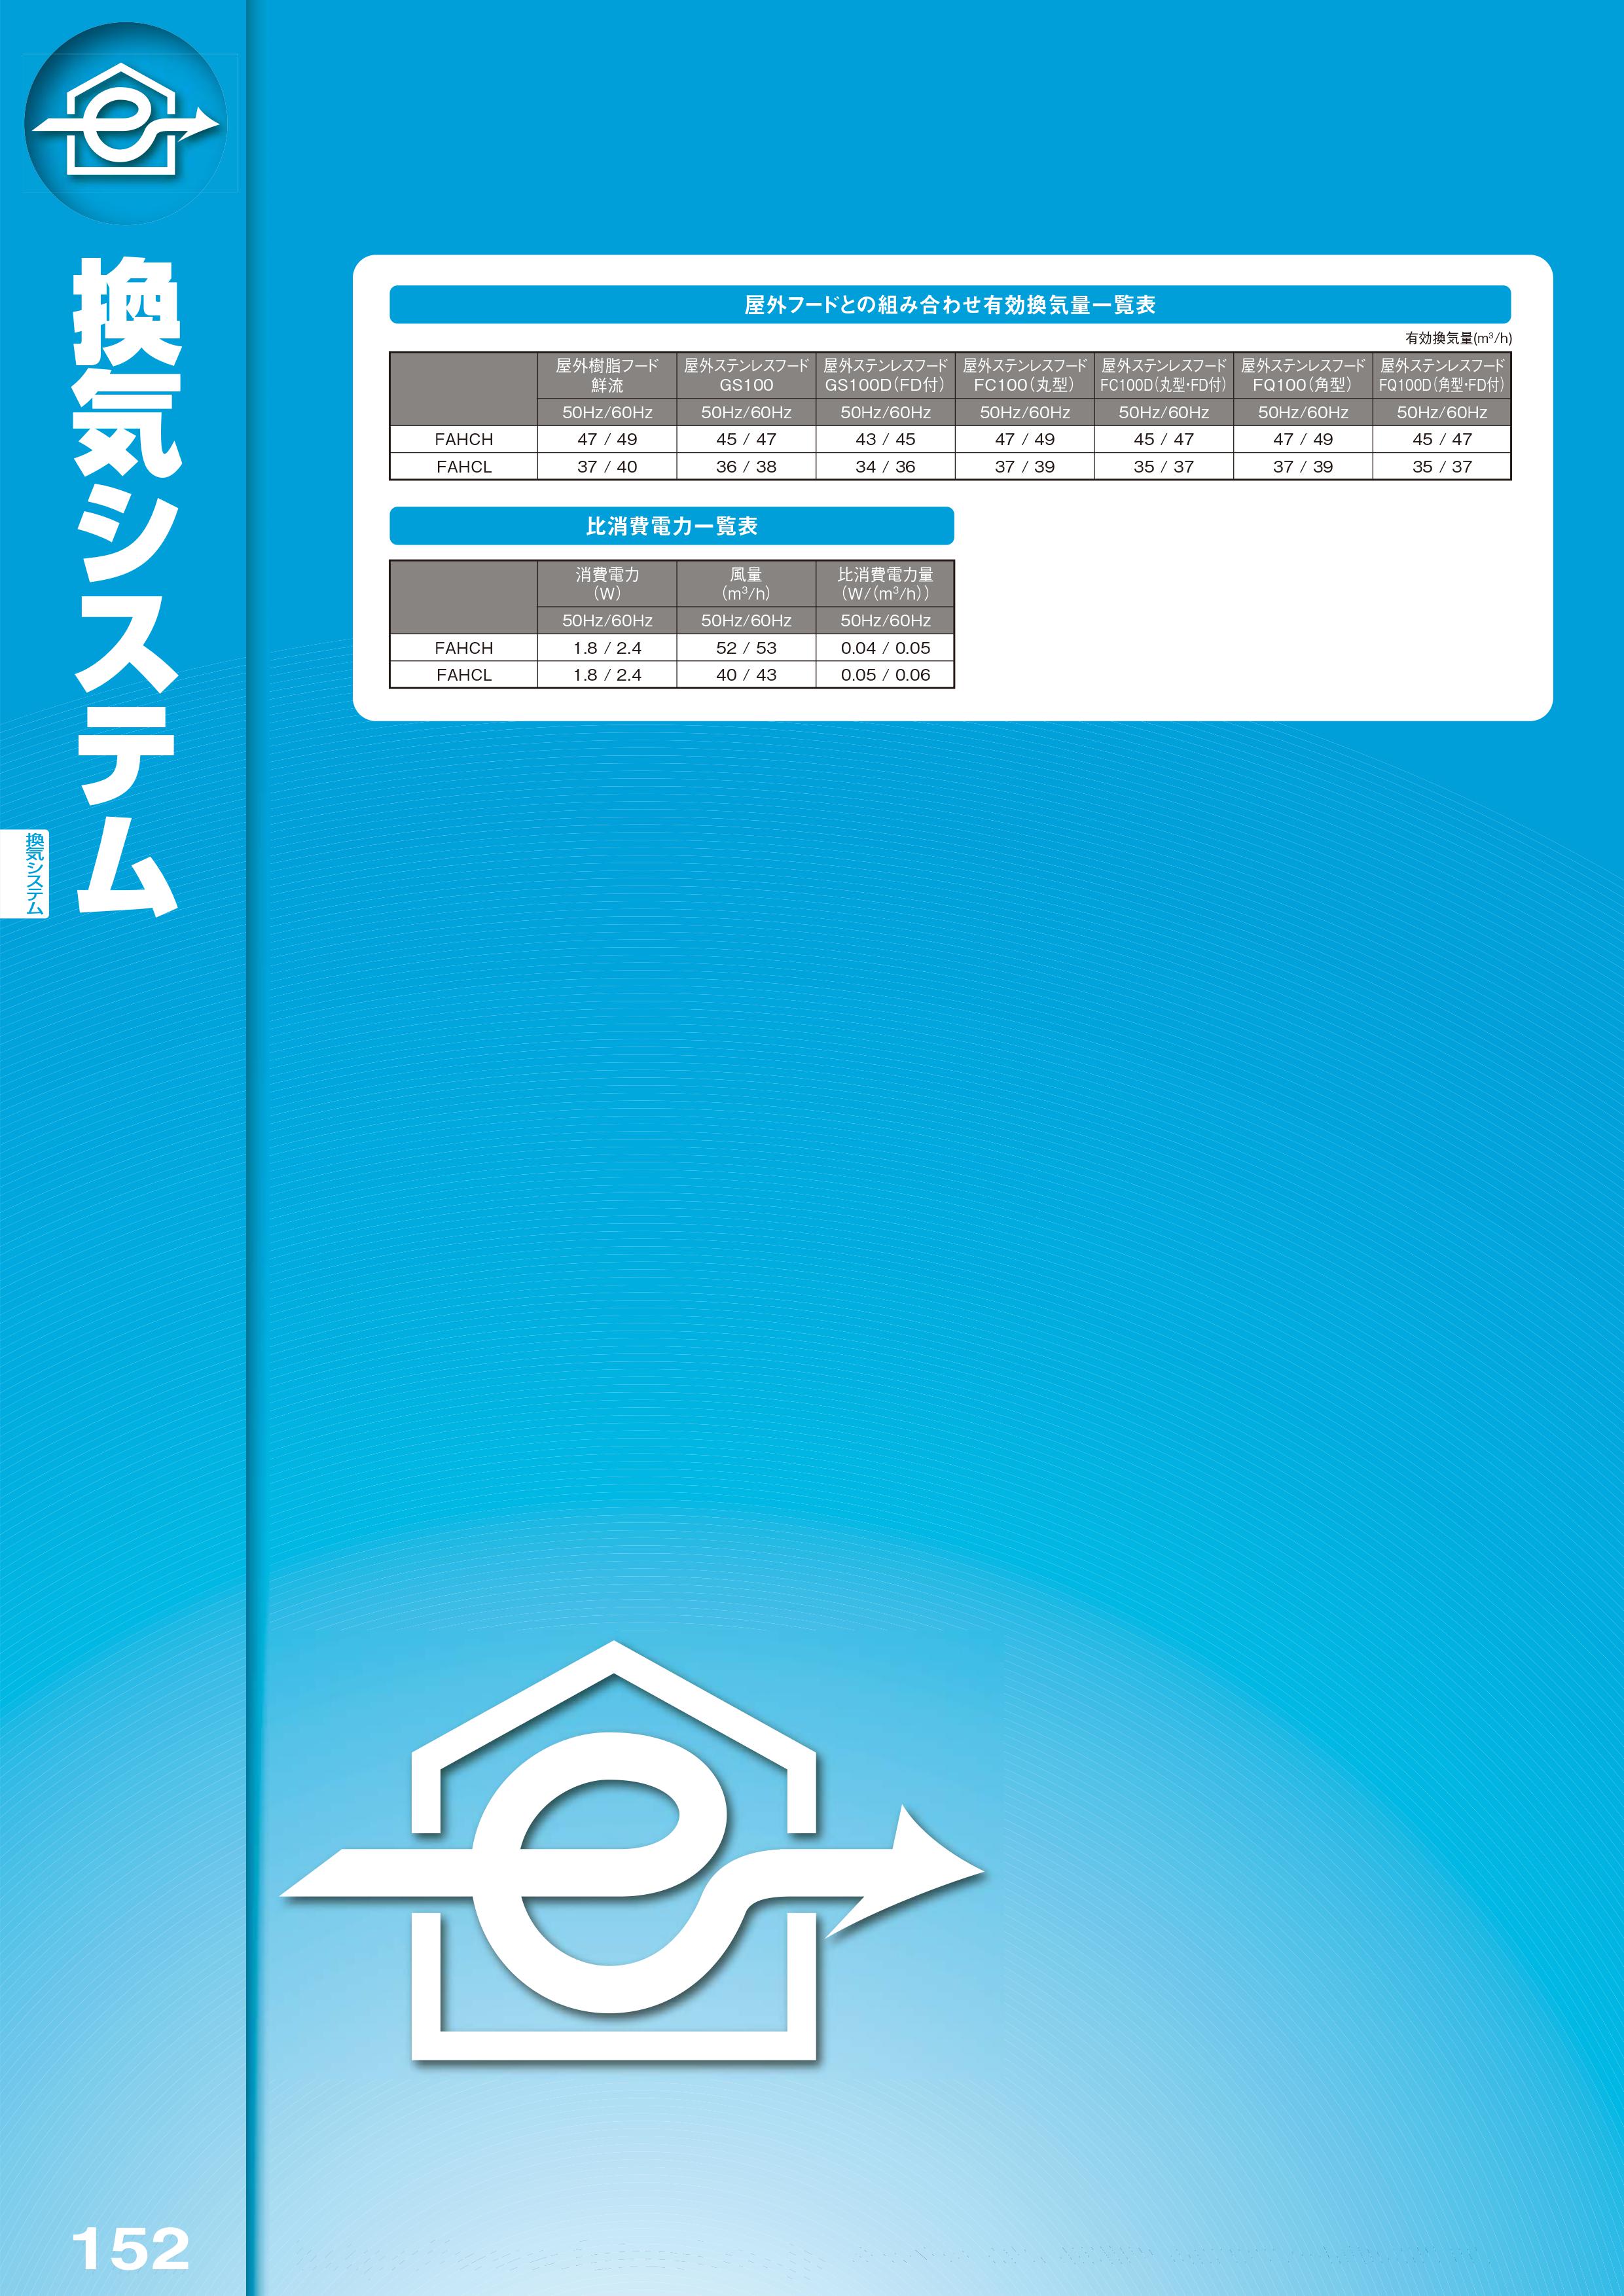 ホームページにhttps://www.fukuvi.co.jp て詳しい商品情報や、お役立ちメニューを掲載しております。 換 気 シ ス テ ム 152 換 気 シ ス テ ム